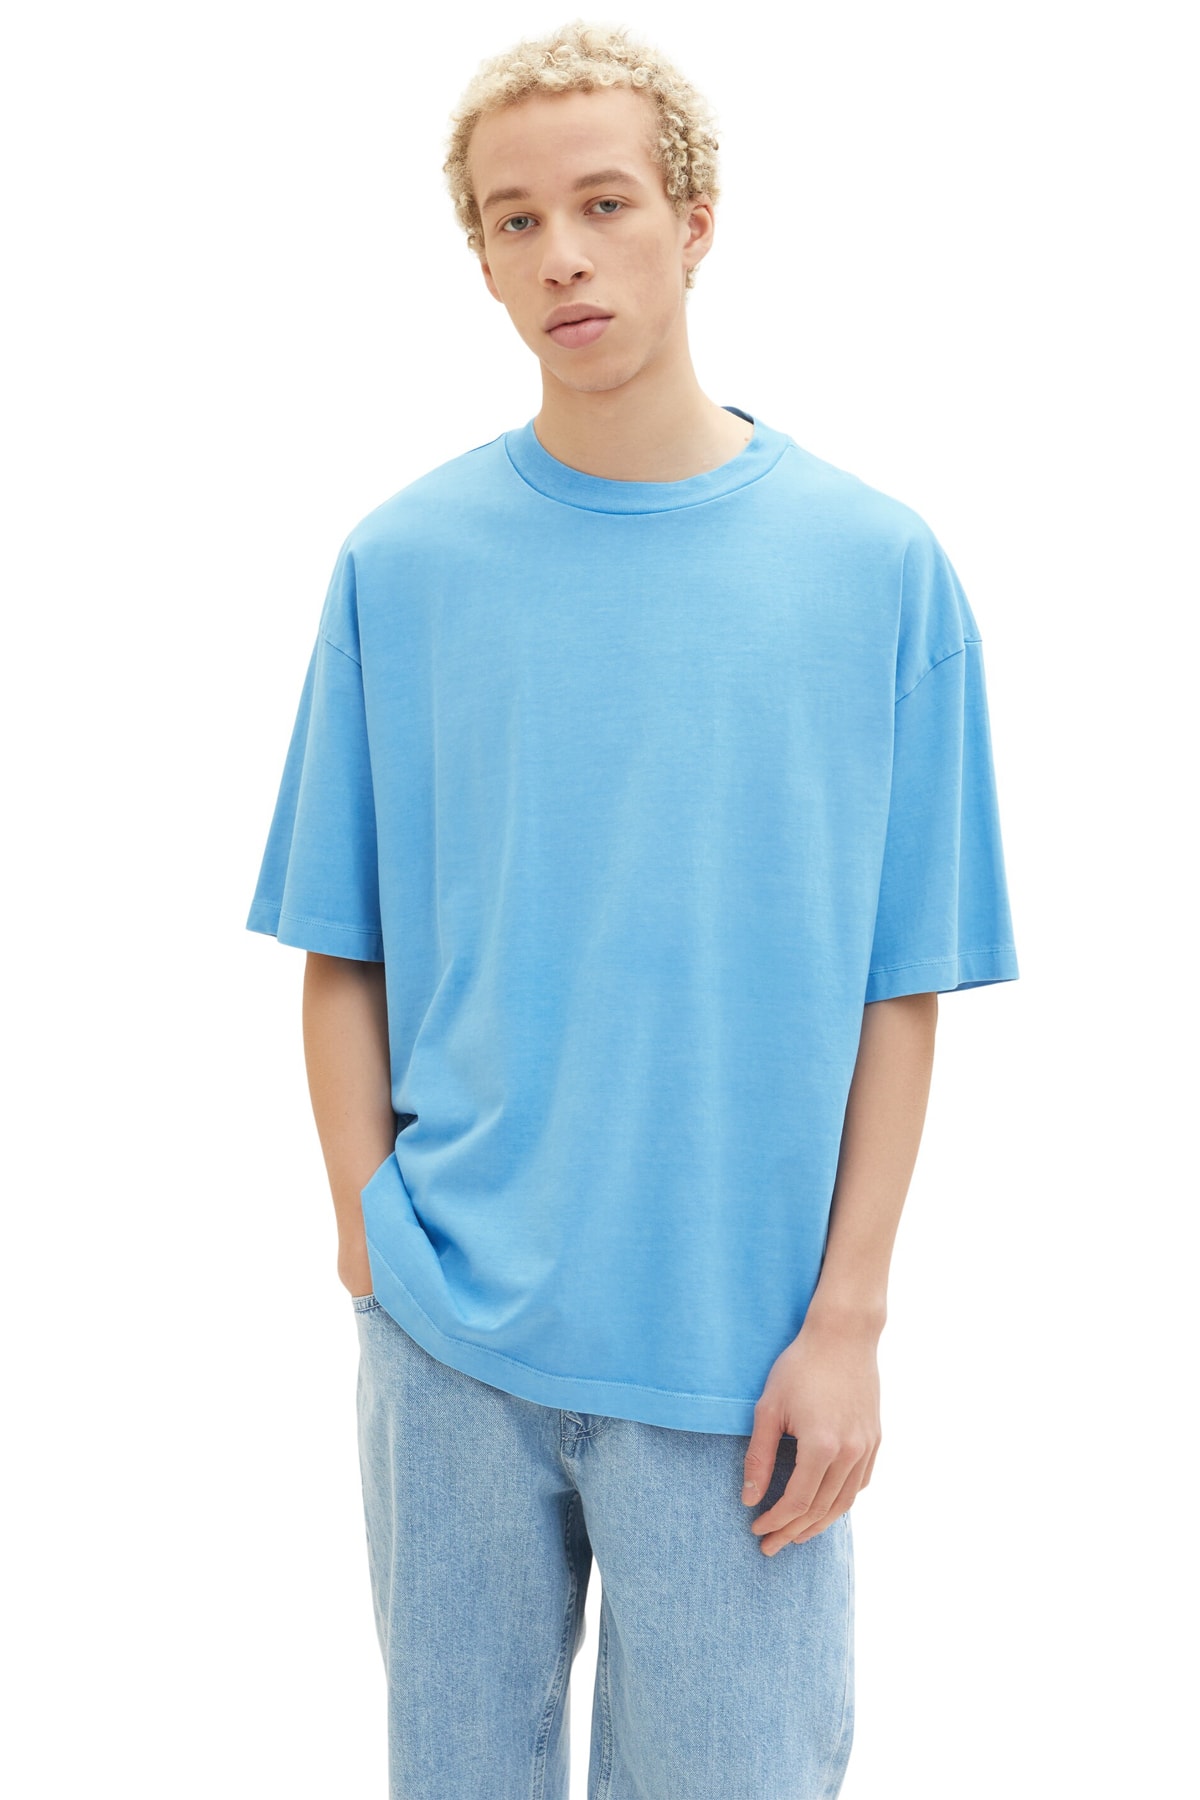 Мужская футболка дождливого небесно-голубого цвета Tom Tailor Denim, синий футболка tom tailor хлопок размер s синий белый